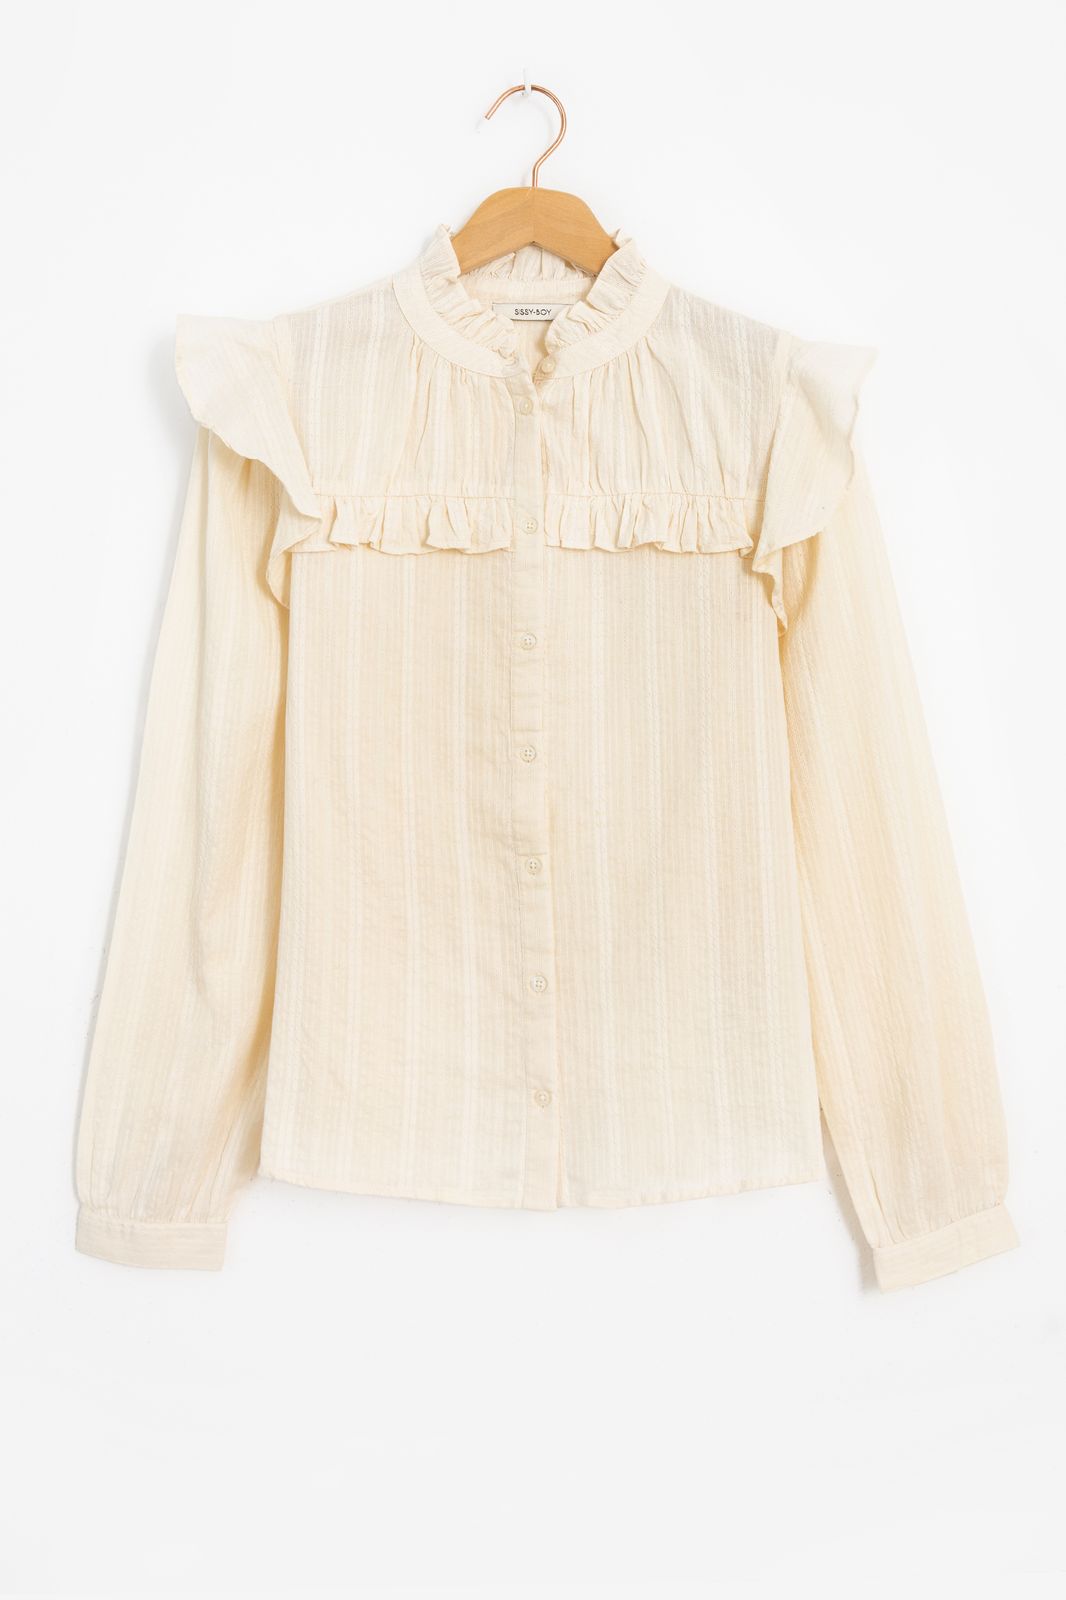 Jacquard-Bluse mit Rüschen - weiß